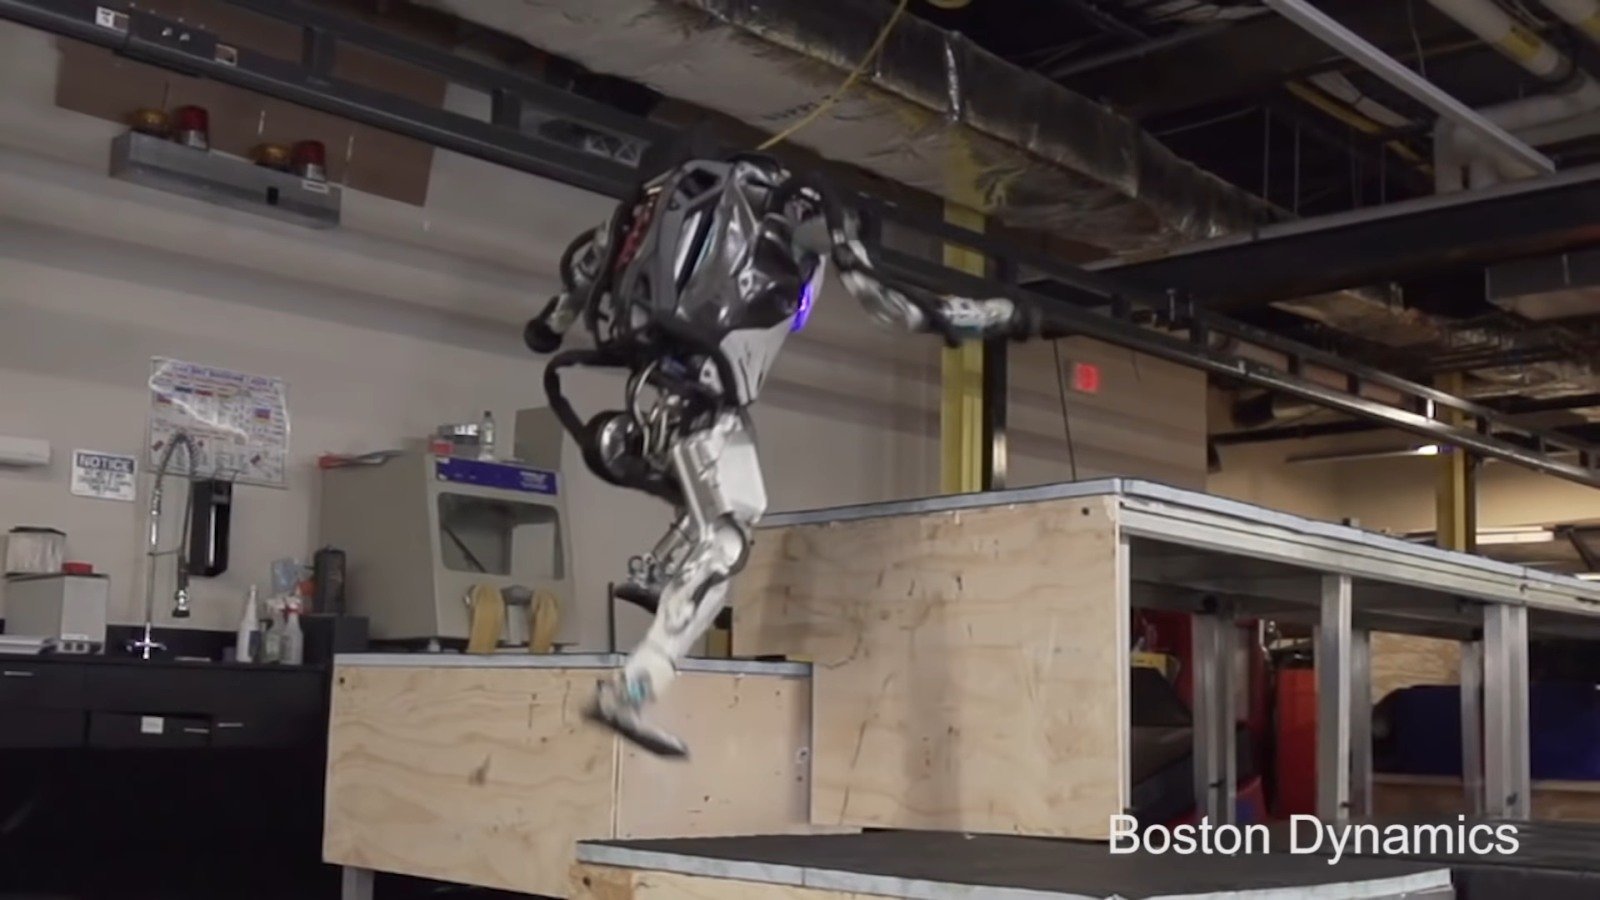 #映像|ベンチャー企業であるボストン-ダイナミックス訓練ロボット